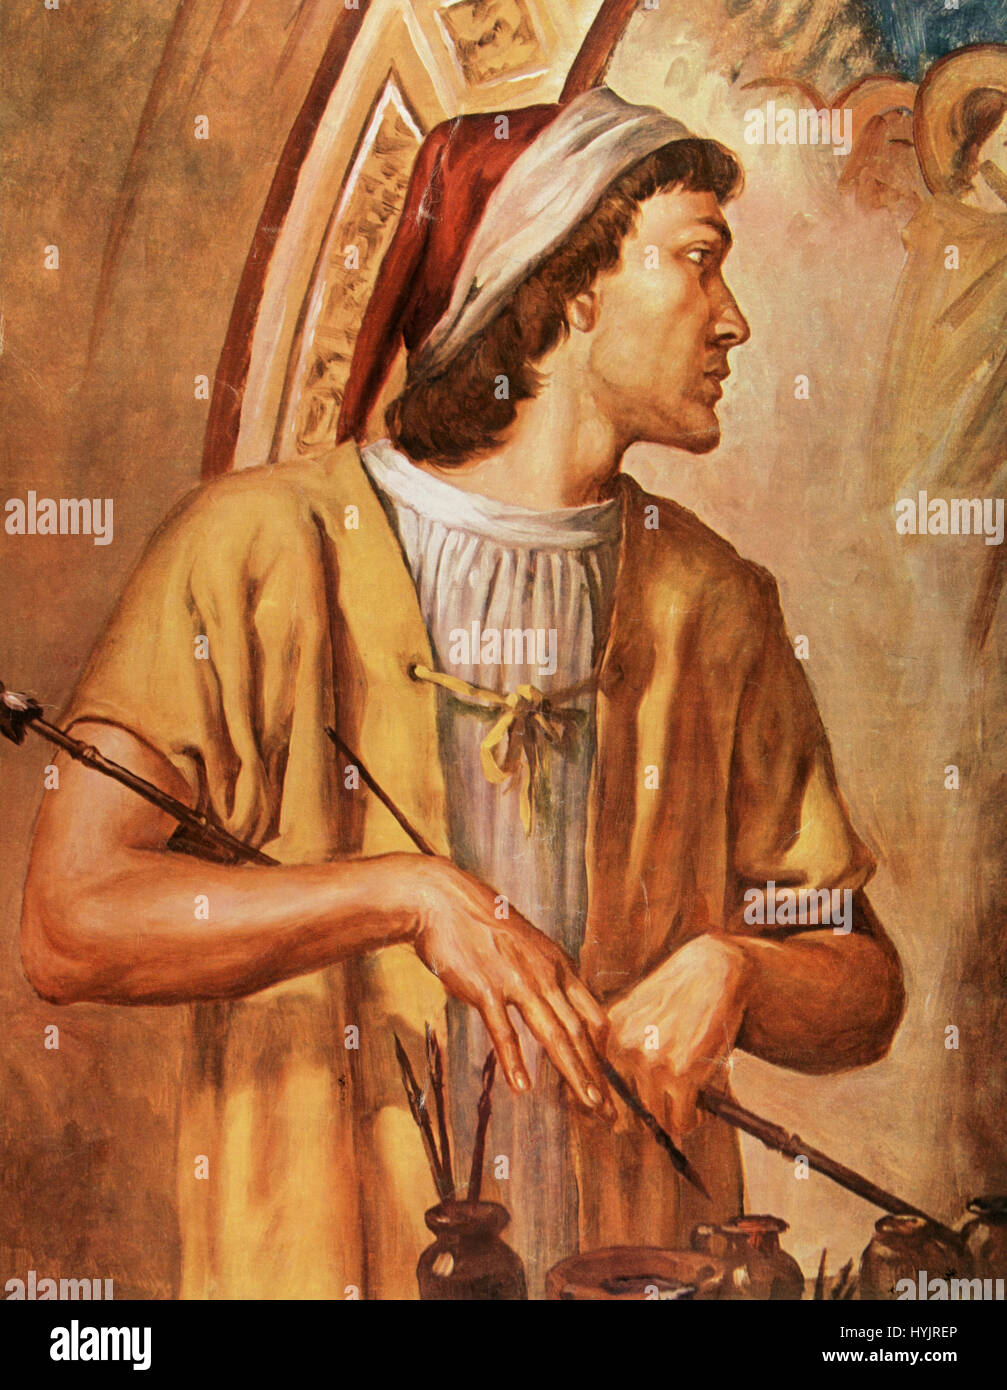 Giotto di Bondone (1266/7-1337). Italienischer Maler und Architekt. Ende des Mittelalters. Porträt. Aquarell. Stockfoto